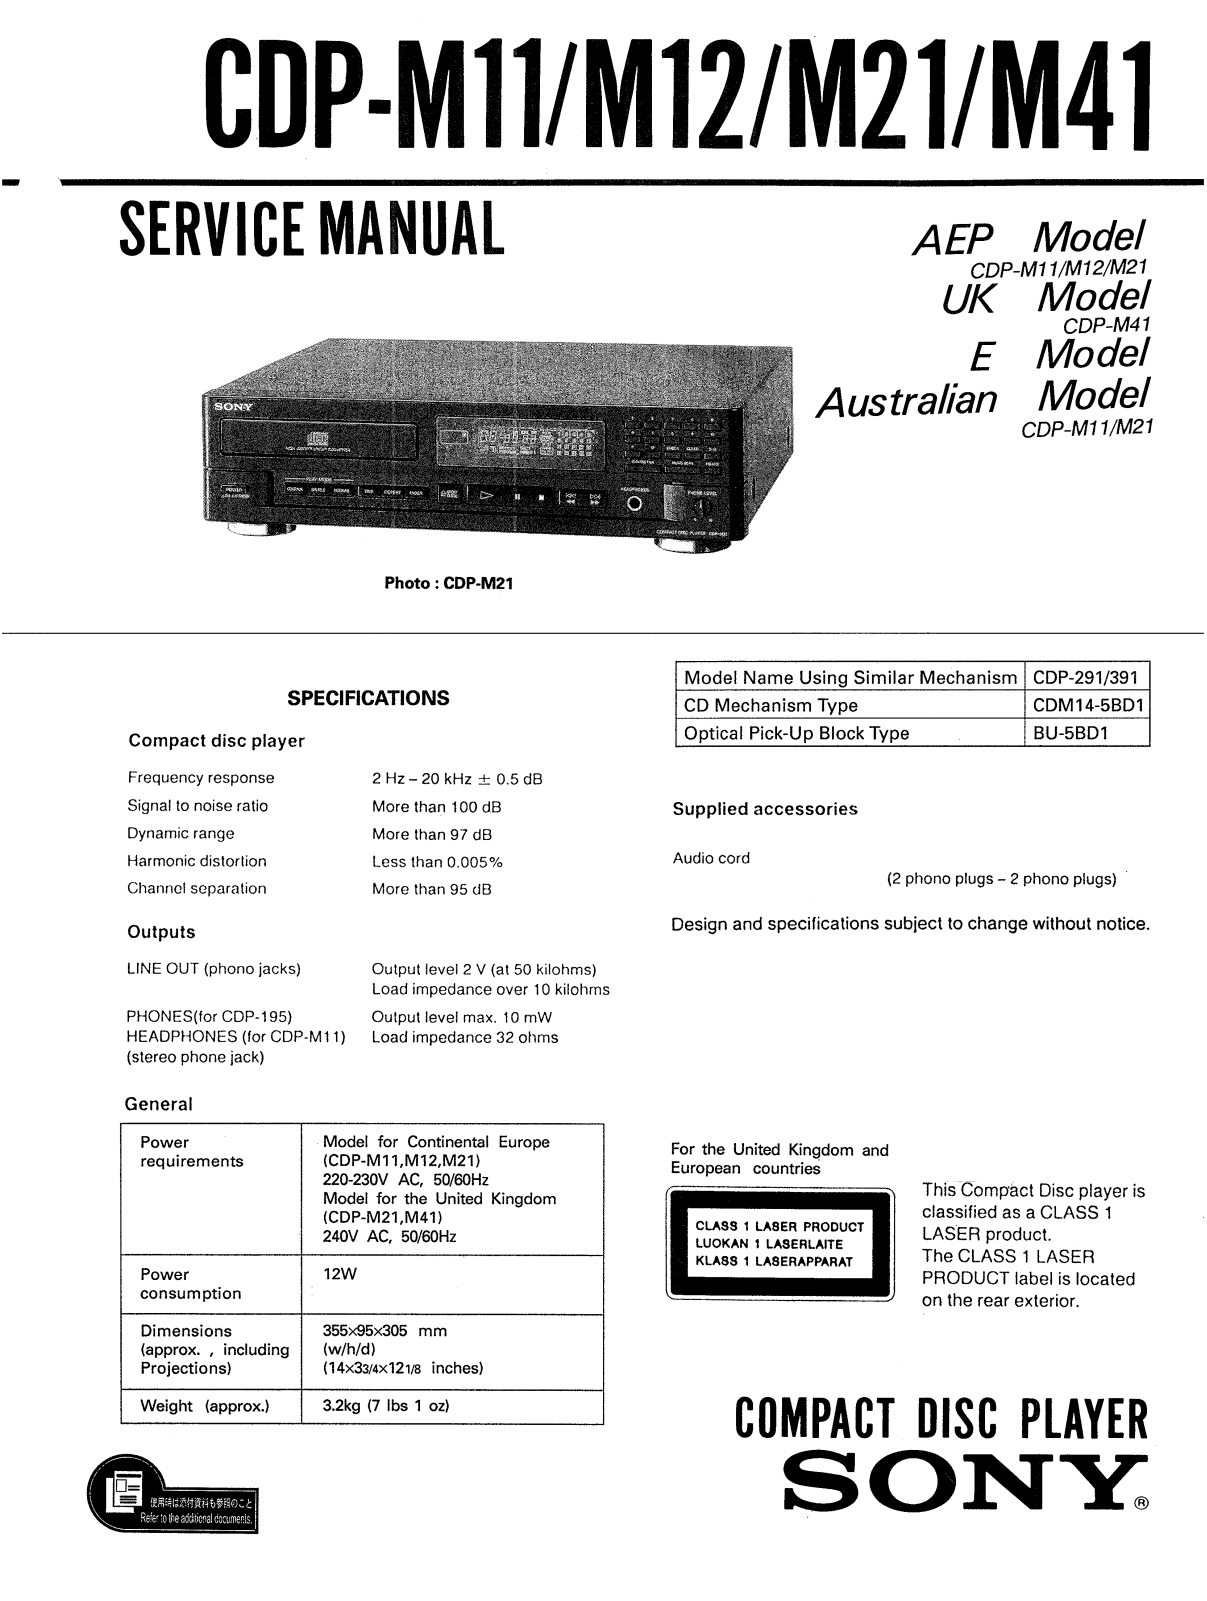 Sony CDPM-21 Service manual